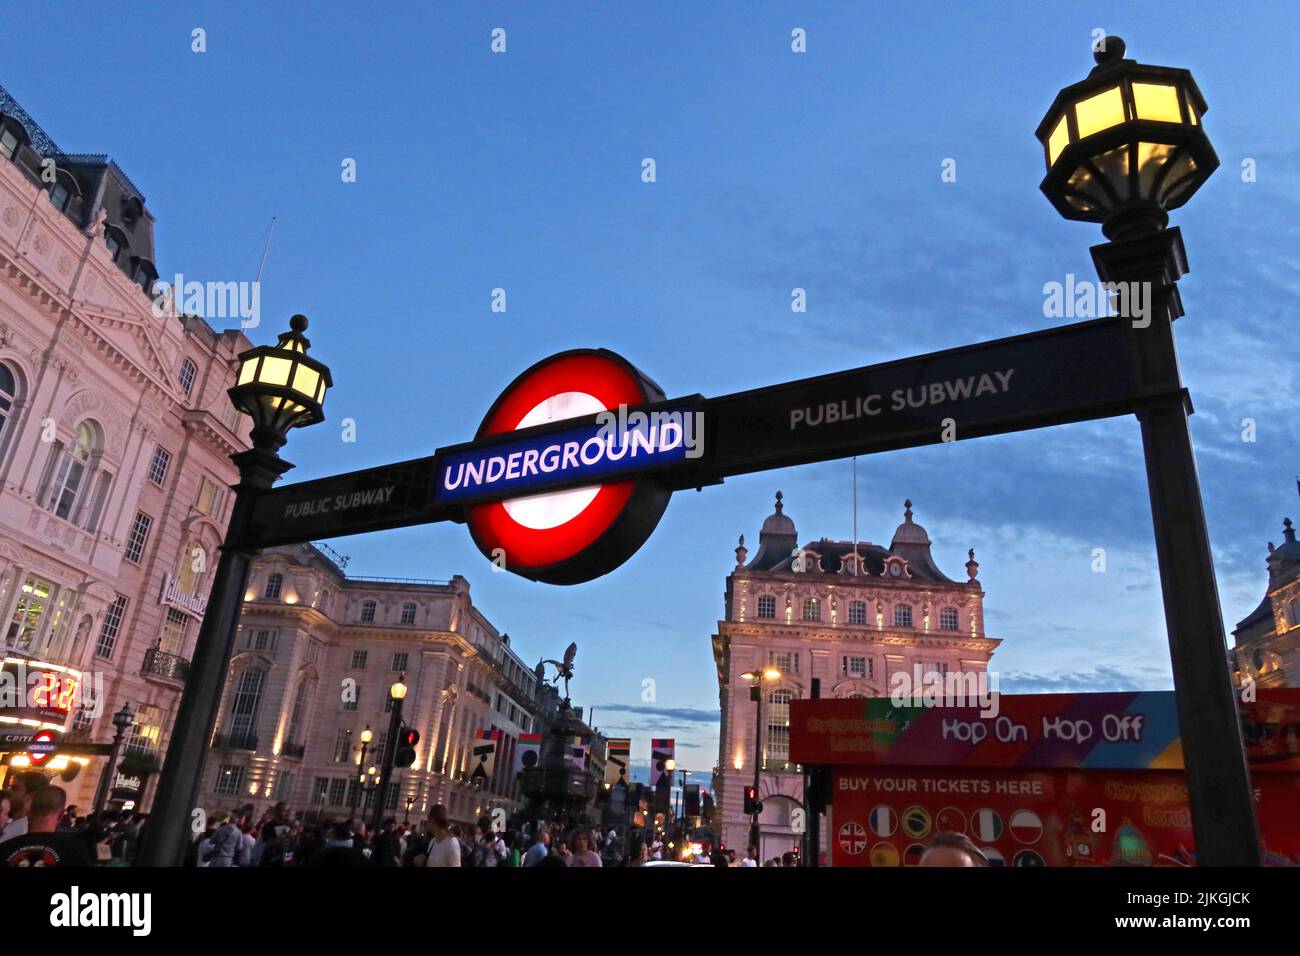 Indicazioni per la metropolitana di Londra al crepuscolo nel centro di Londra, Piccadilly e Regent Street, Londra, Inghilterra, Regno Unito, W1B 3AB Foto Stock